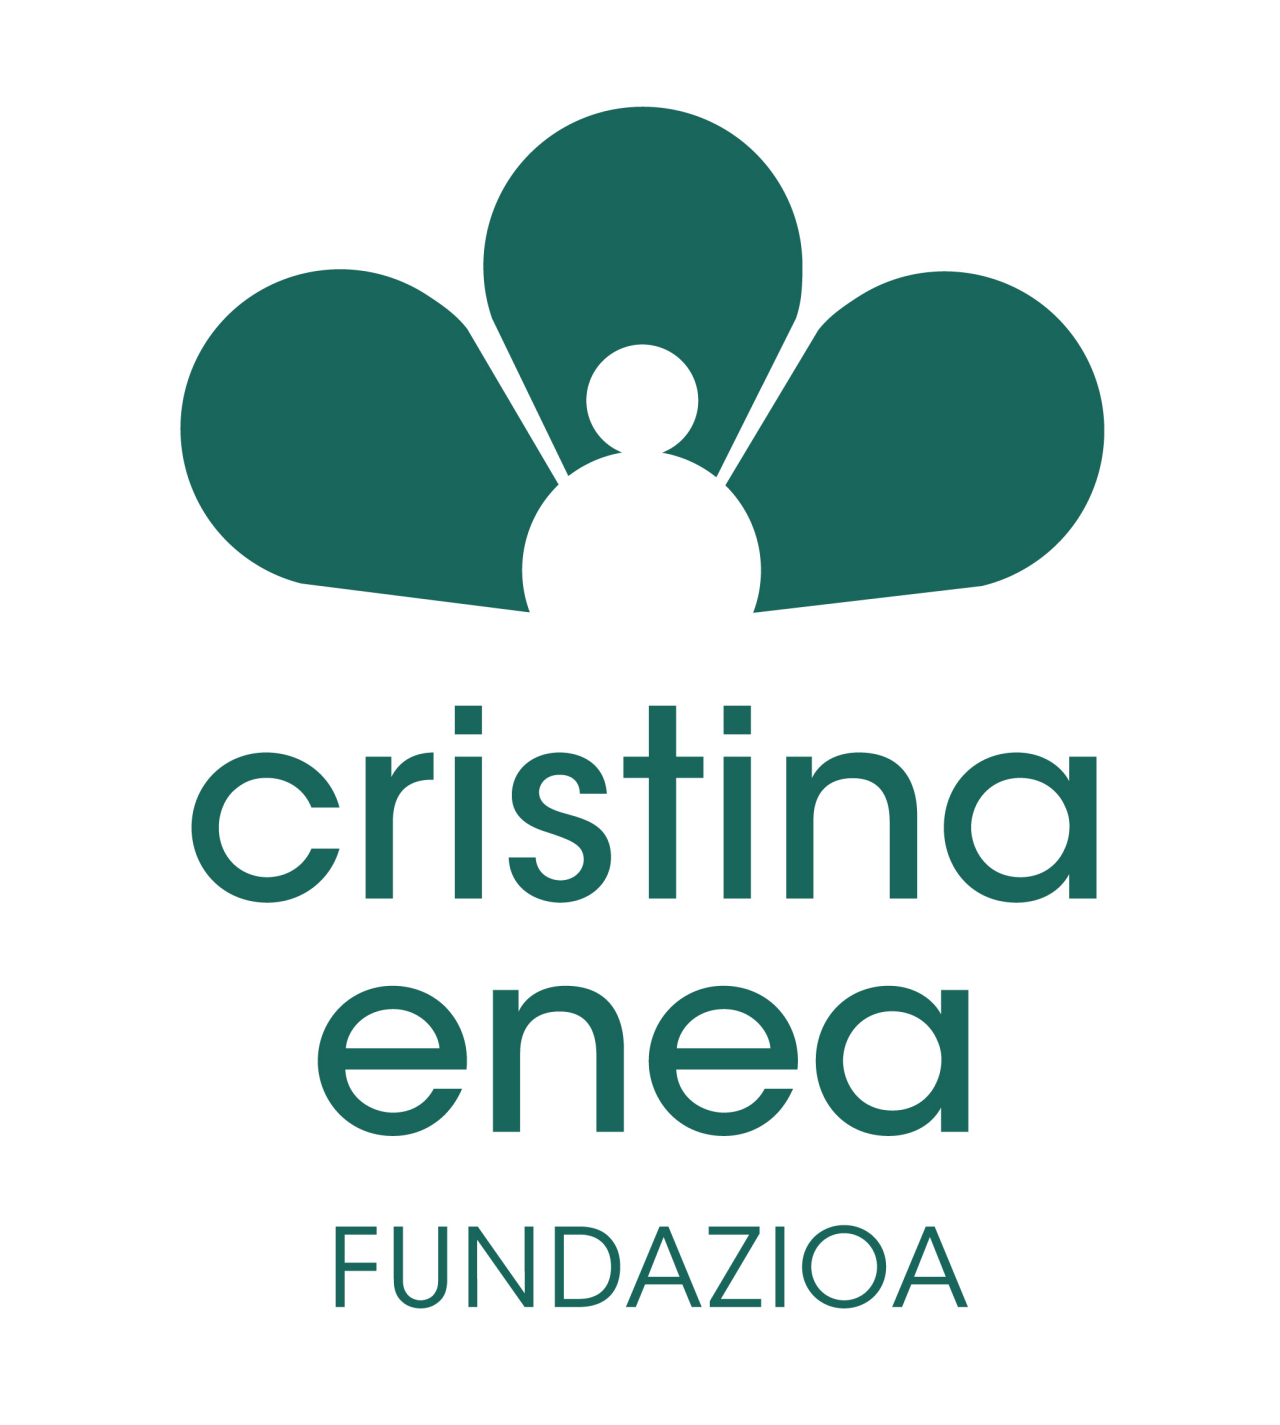 Fundación Cristina Enea